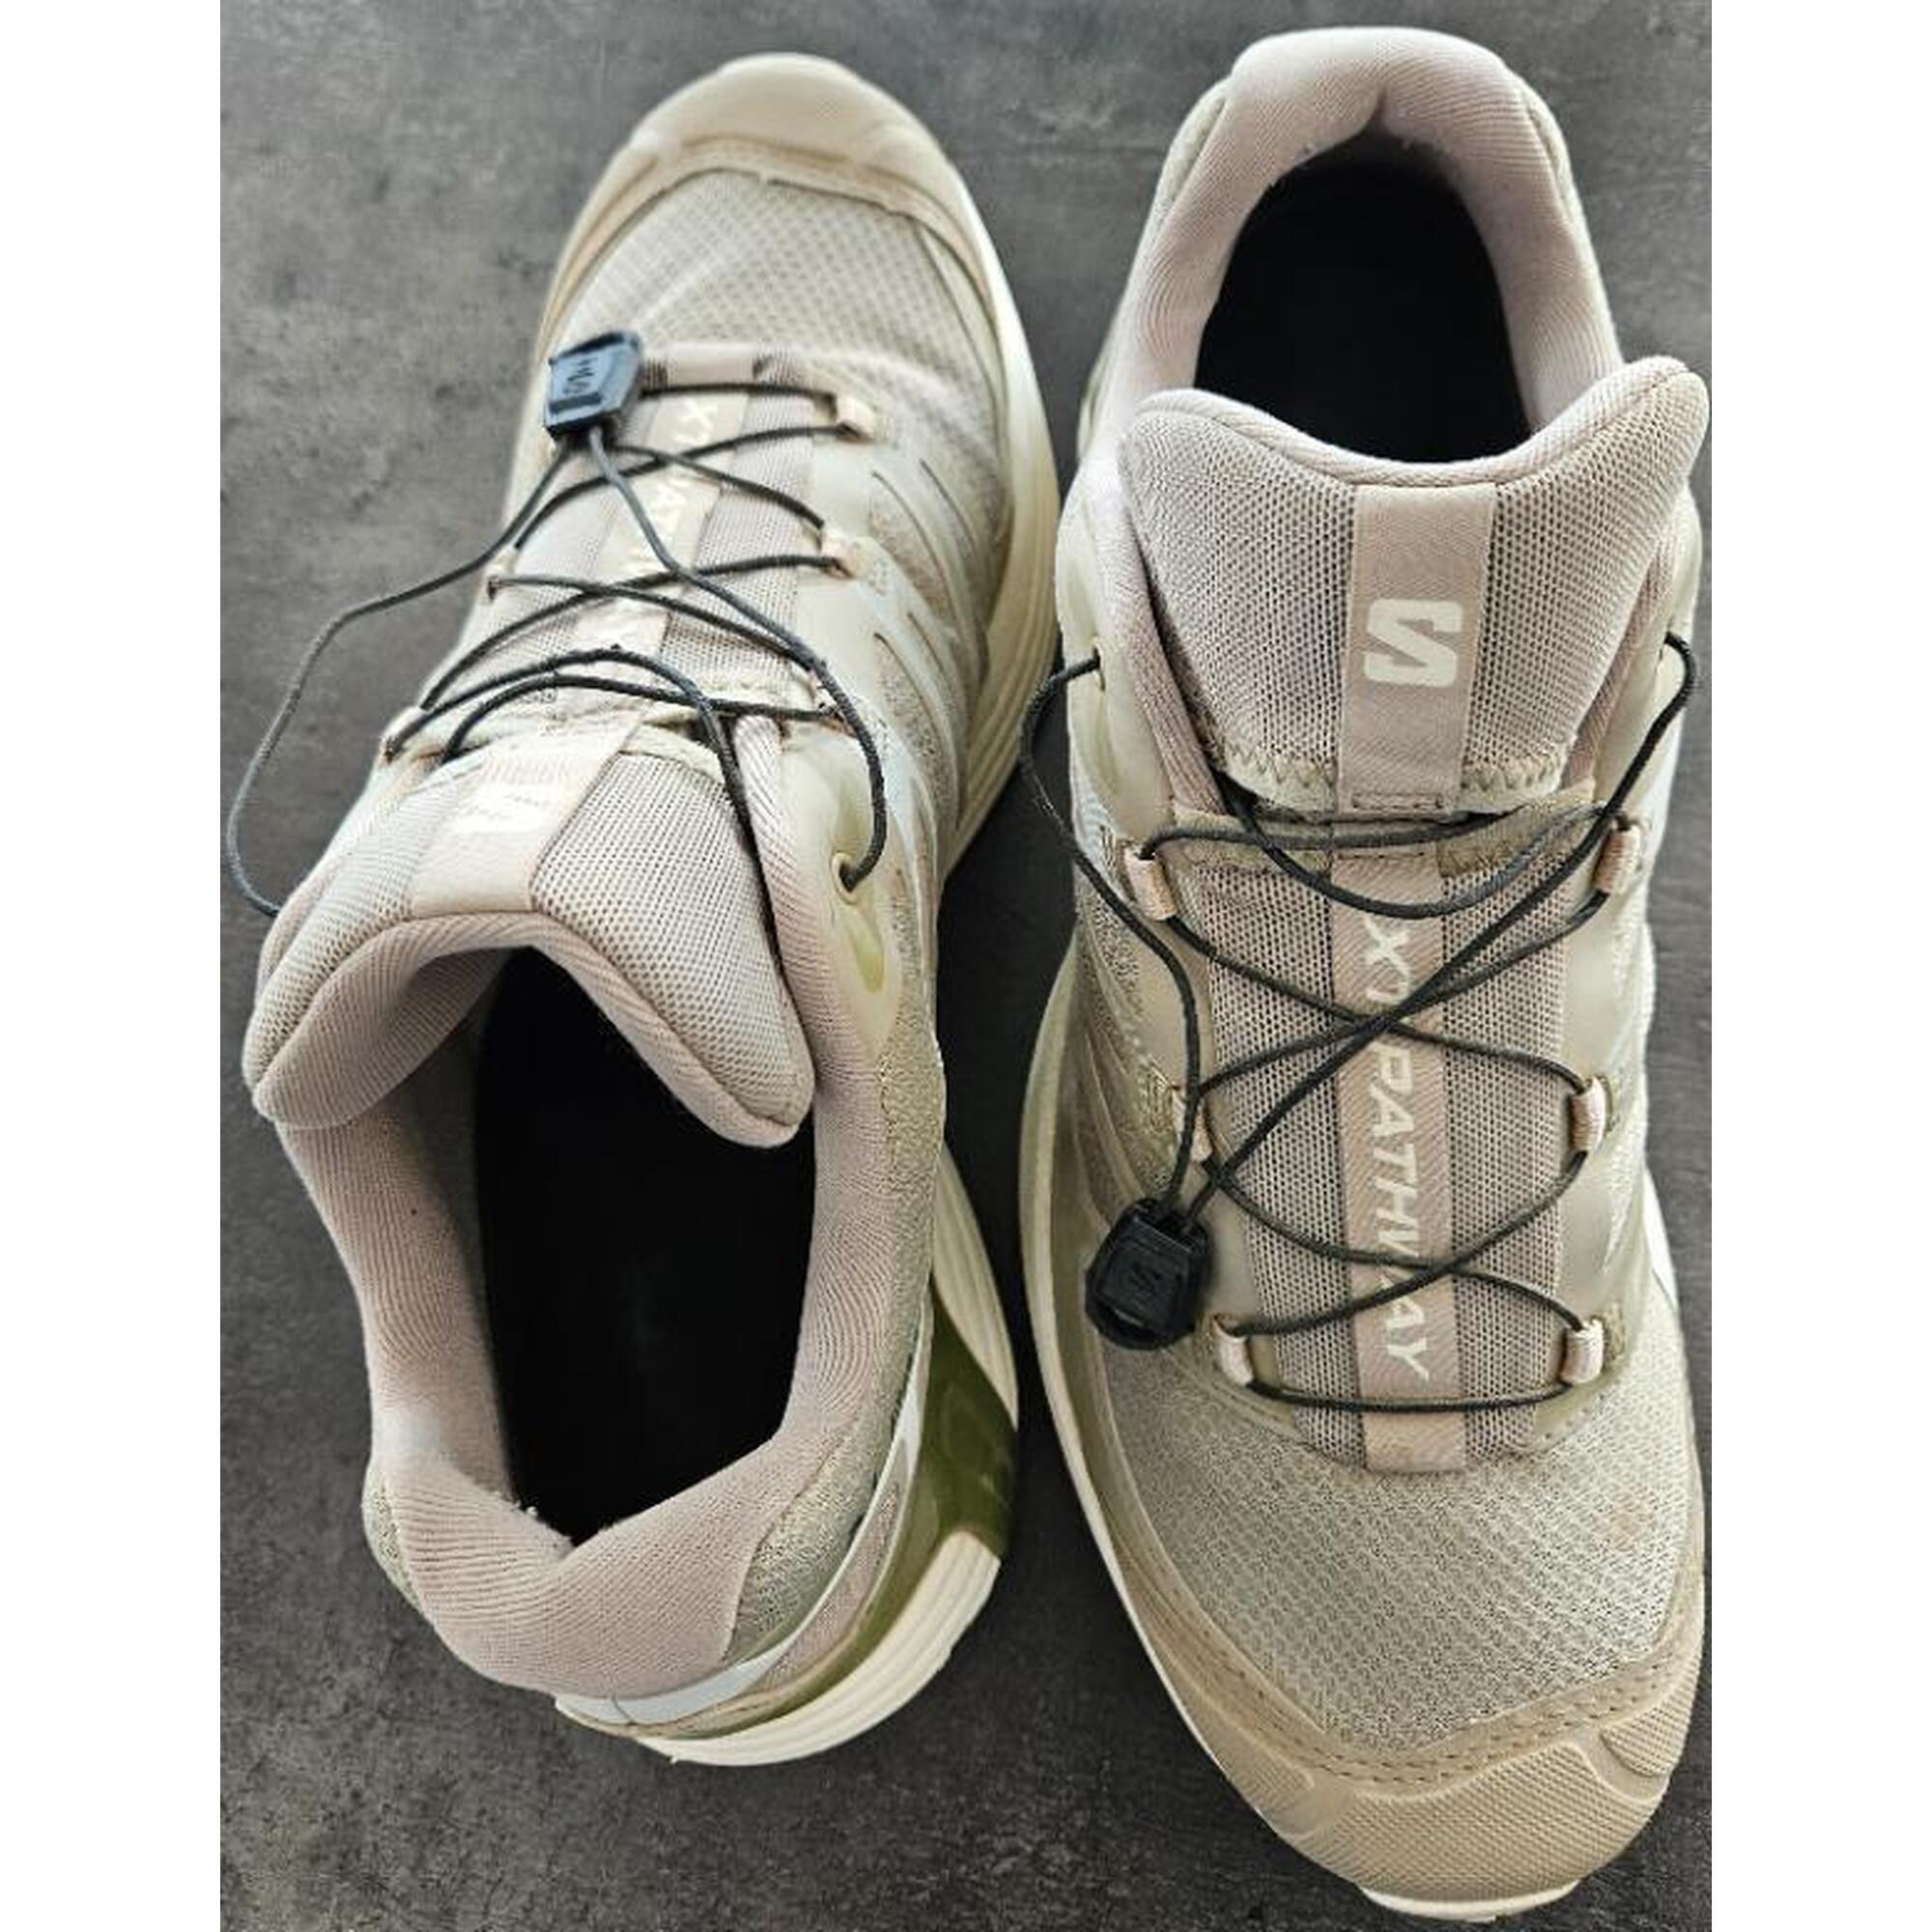 C2C - Chaussures de randonnée Salomon XT Pathway taille 42 2/3